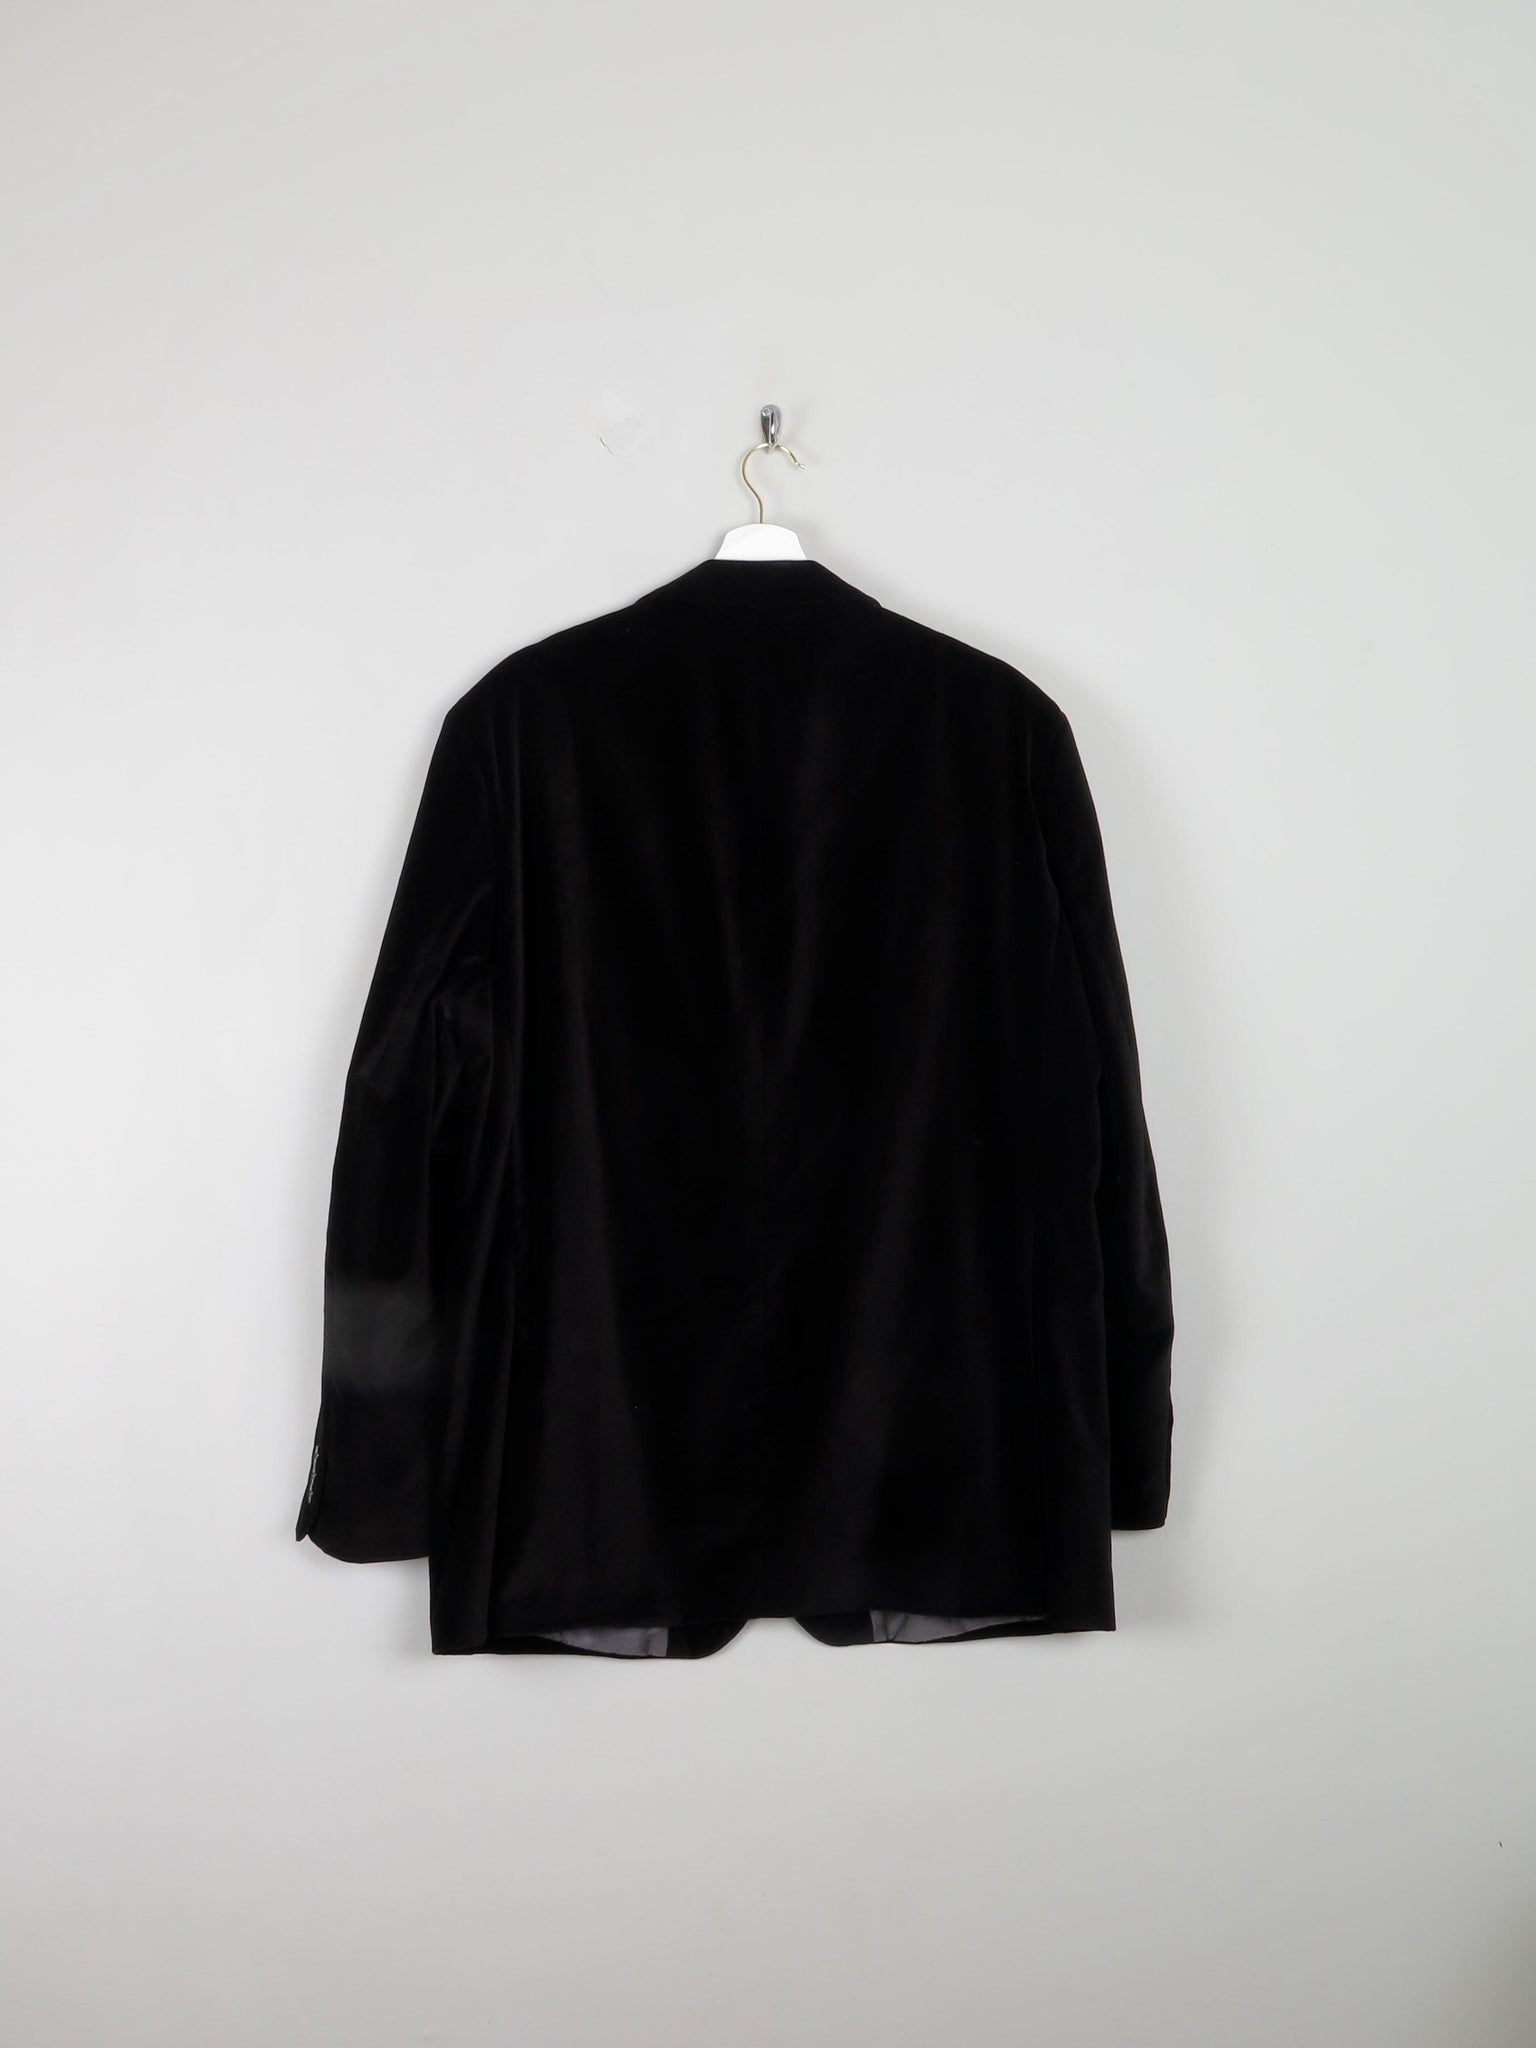 Mens Black Velvet  Pierre Cardin Jacket 46"L - The Harlequin